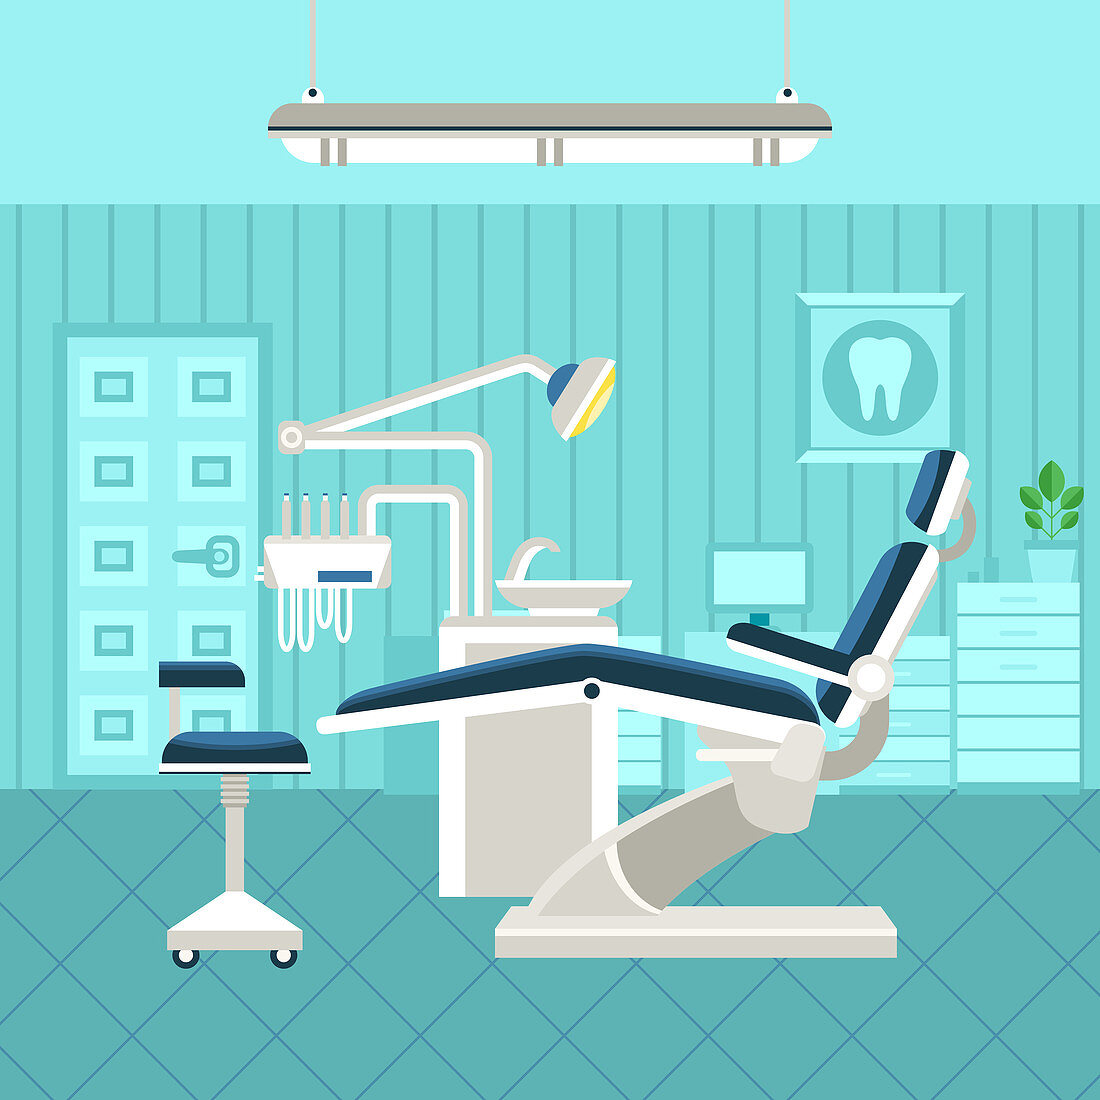 Dental office, illustration